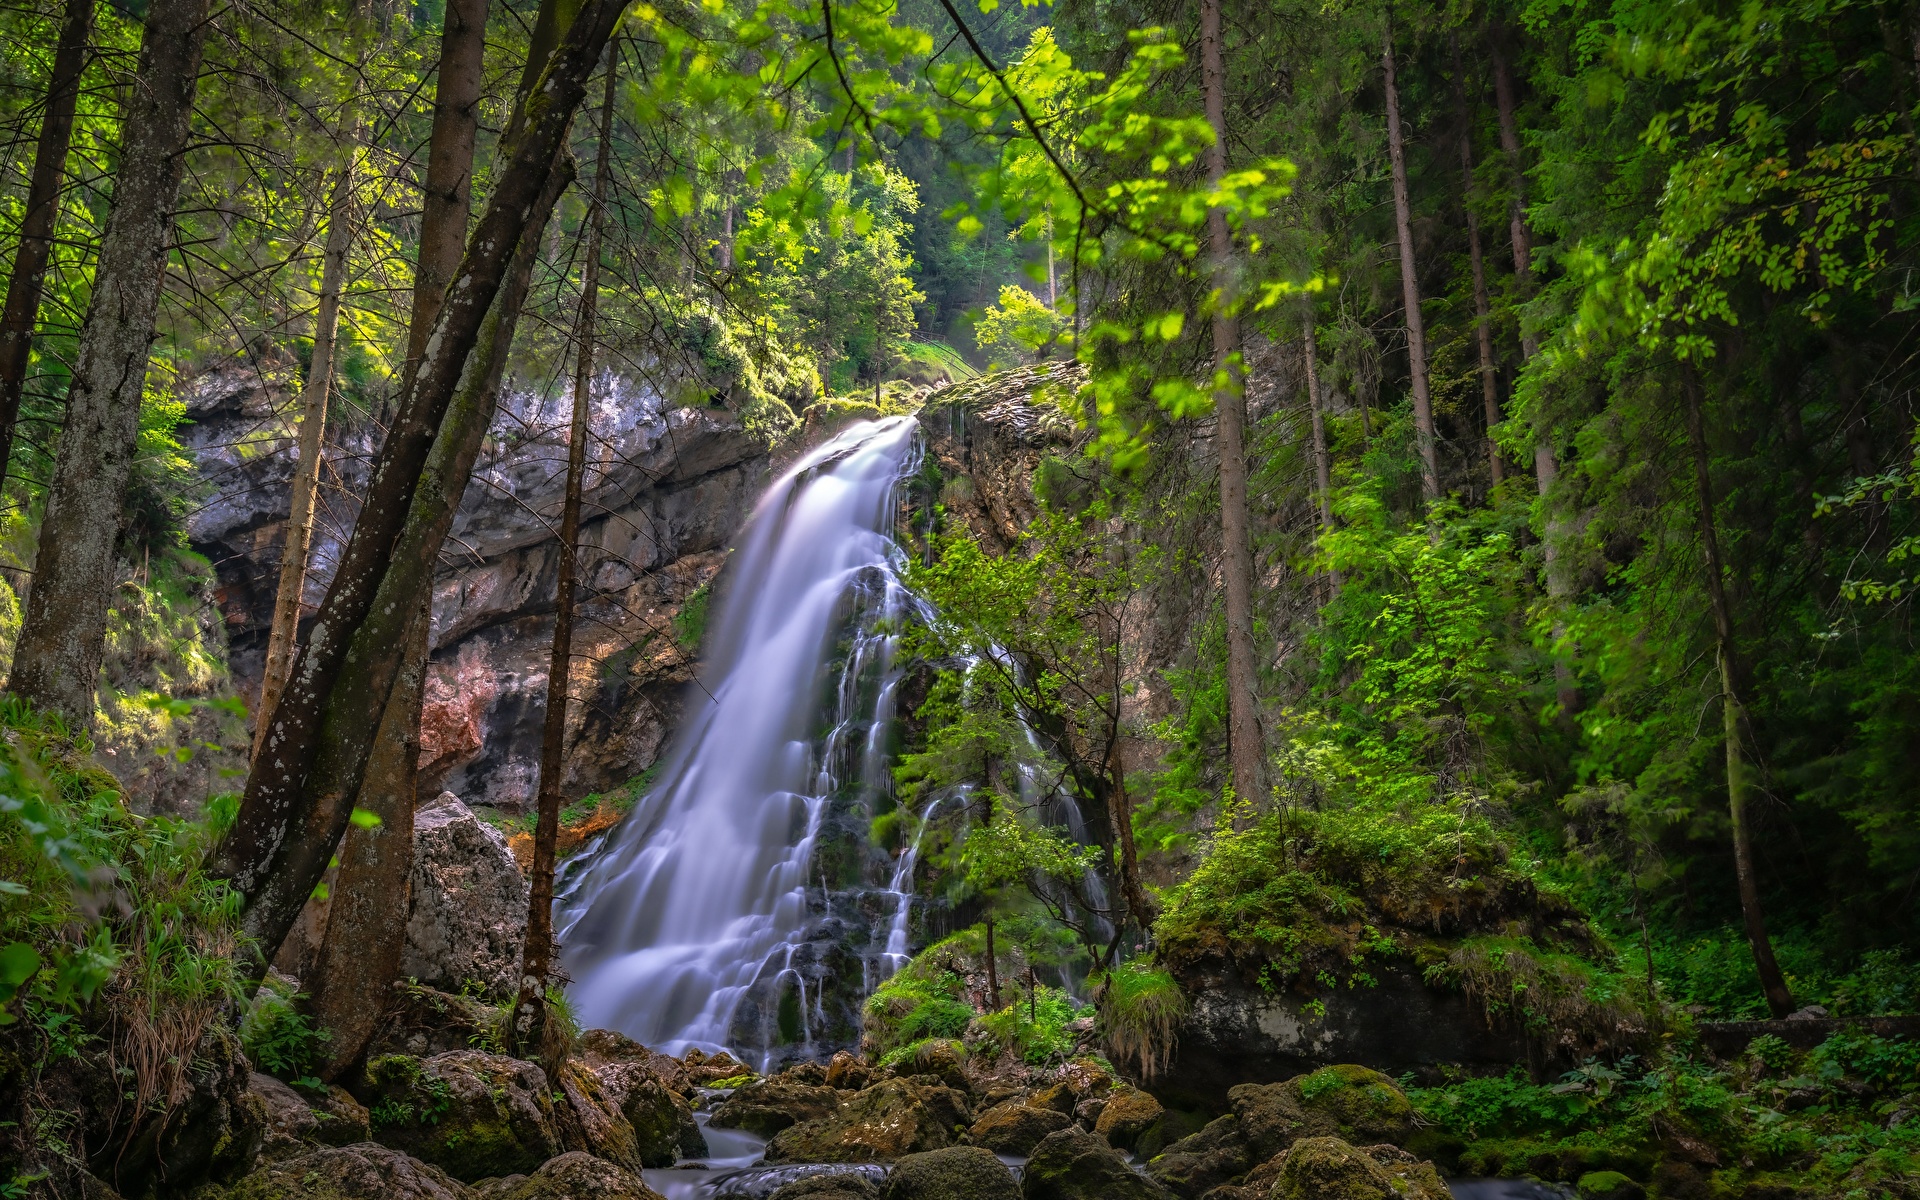 Фото Австрия Golling Waterfall Природа Водопады мха Камни дерева 1920x1200 Мох мхом Камень дерево Деревья деревьев